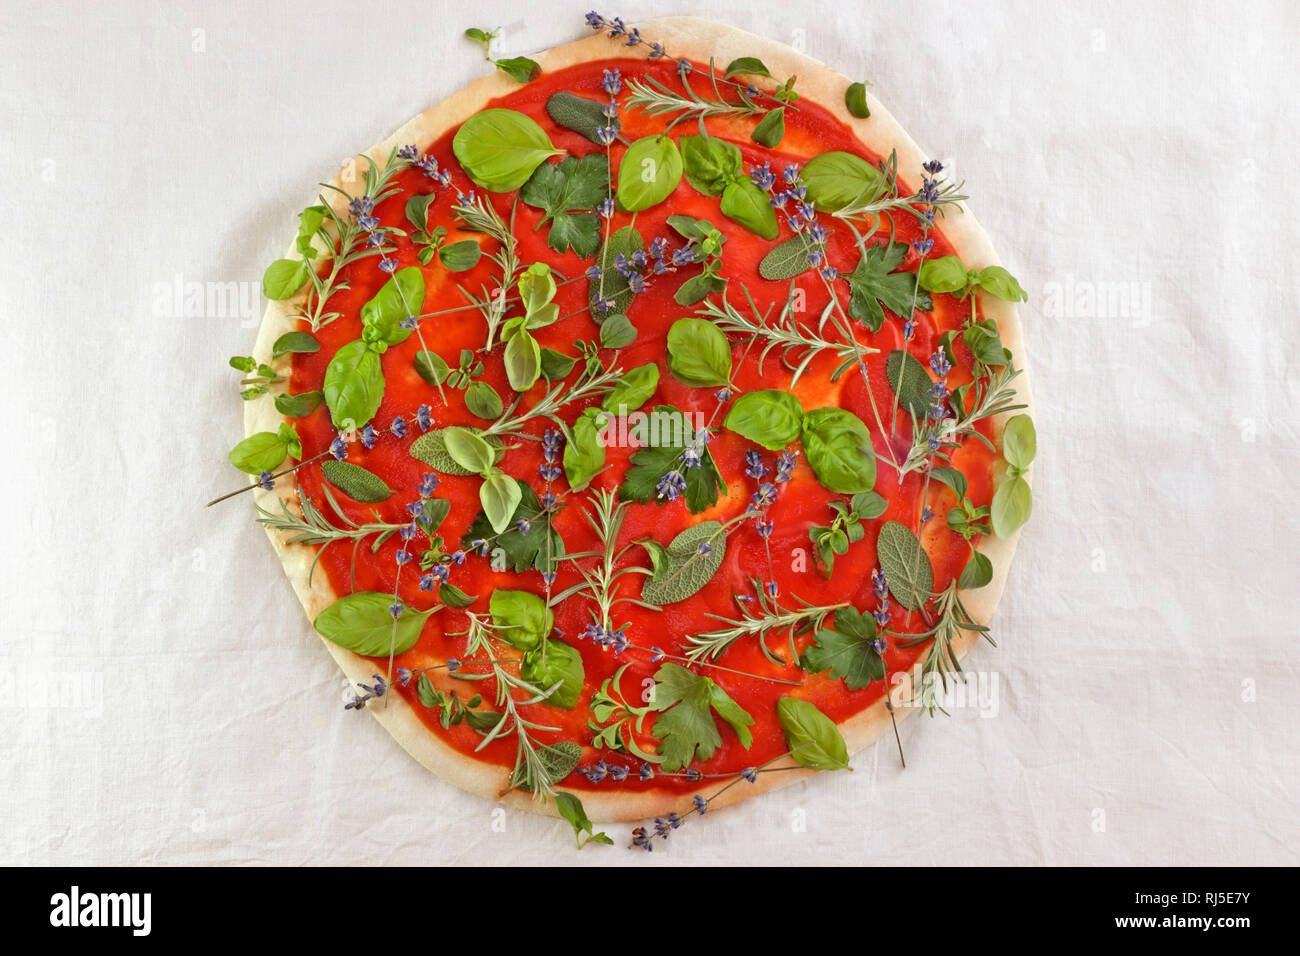 Pizza belegt mit verschiedensten Kräutern Stock Photo